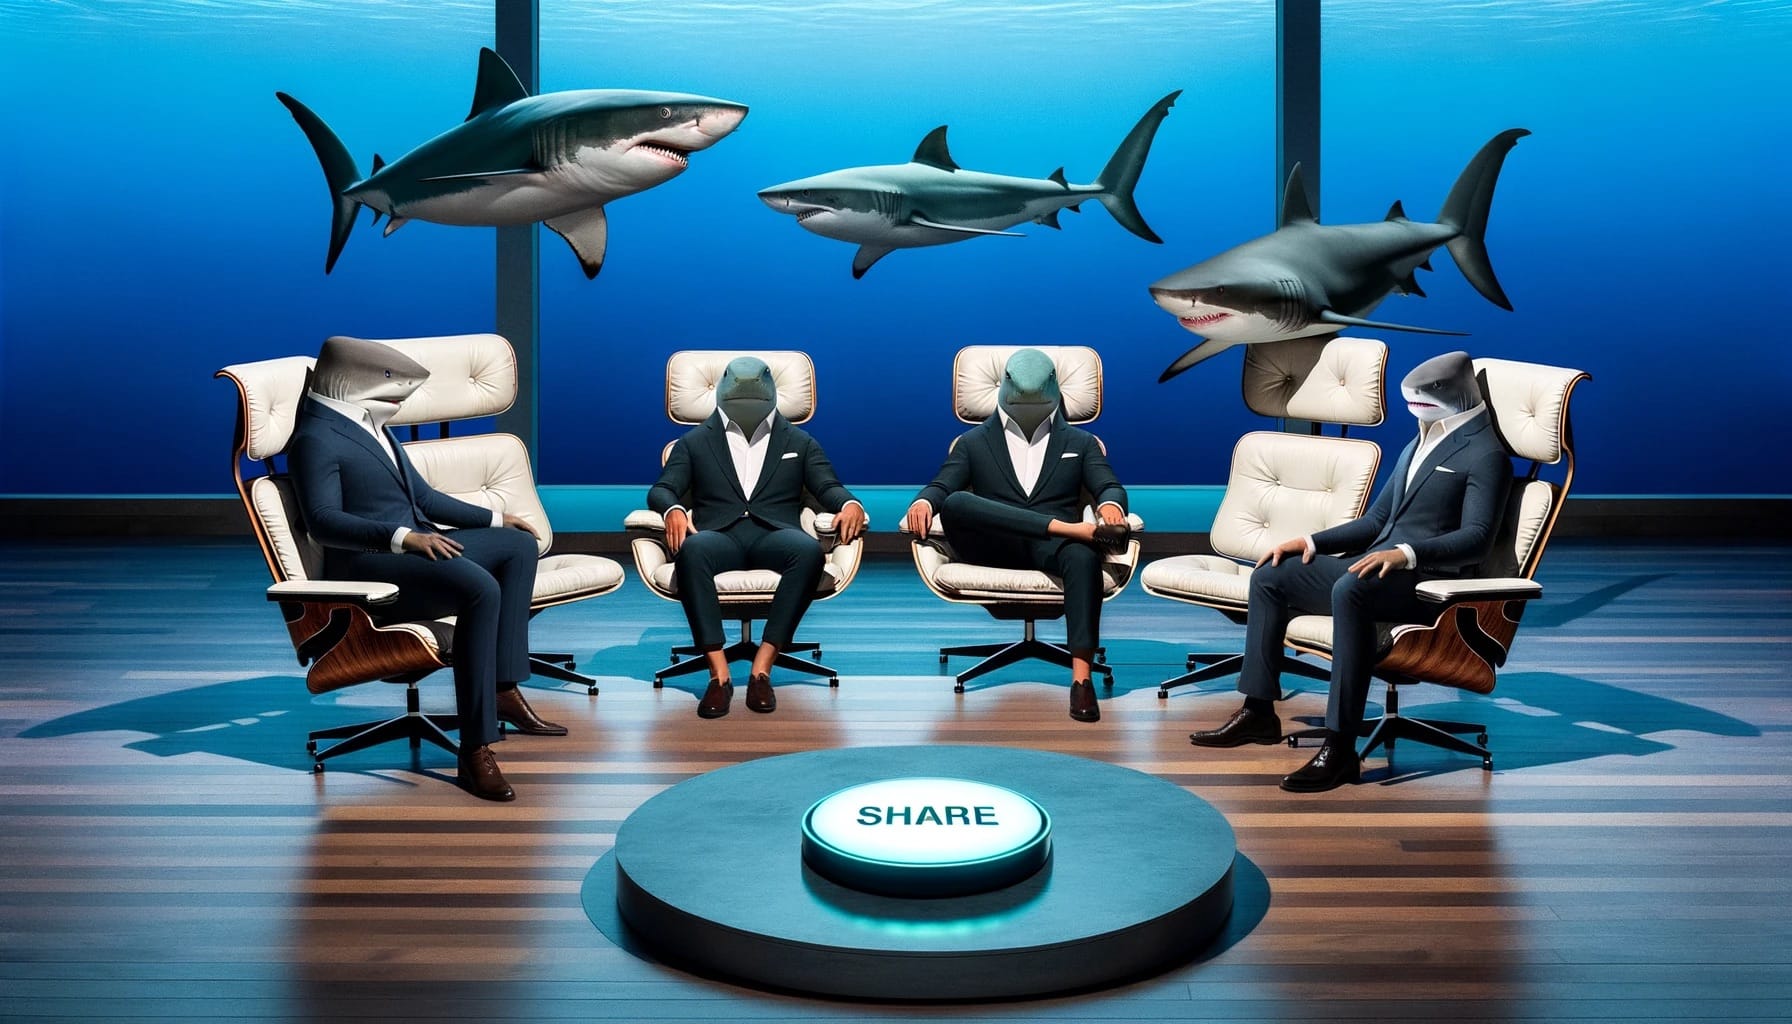 Shark Tank: Sharks contemplate a better sharing button